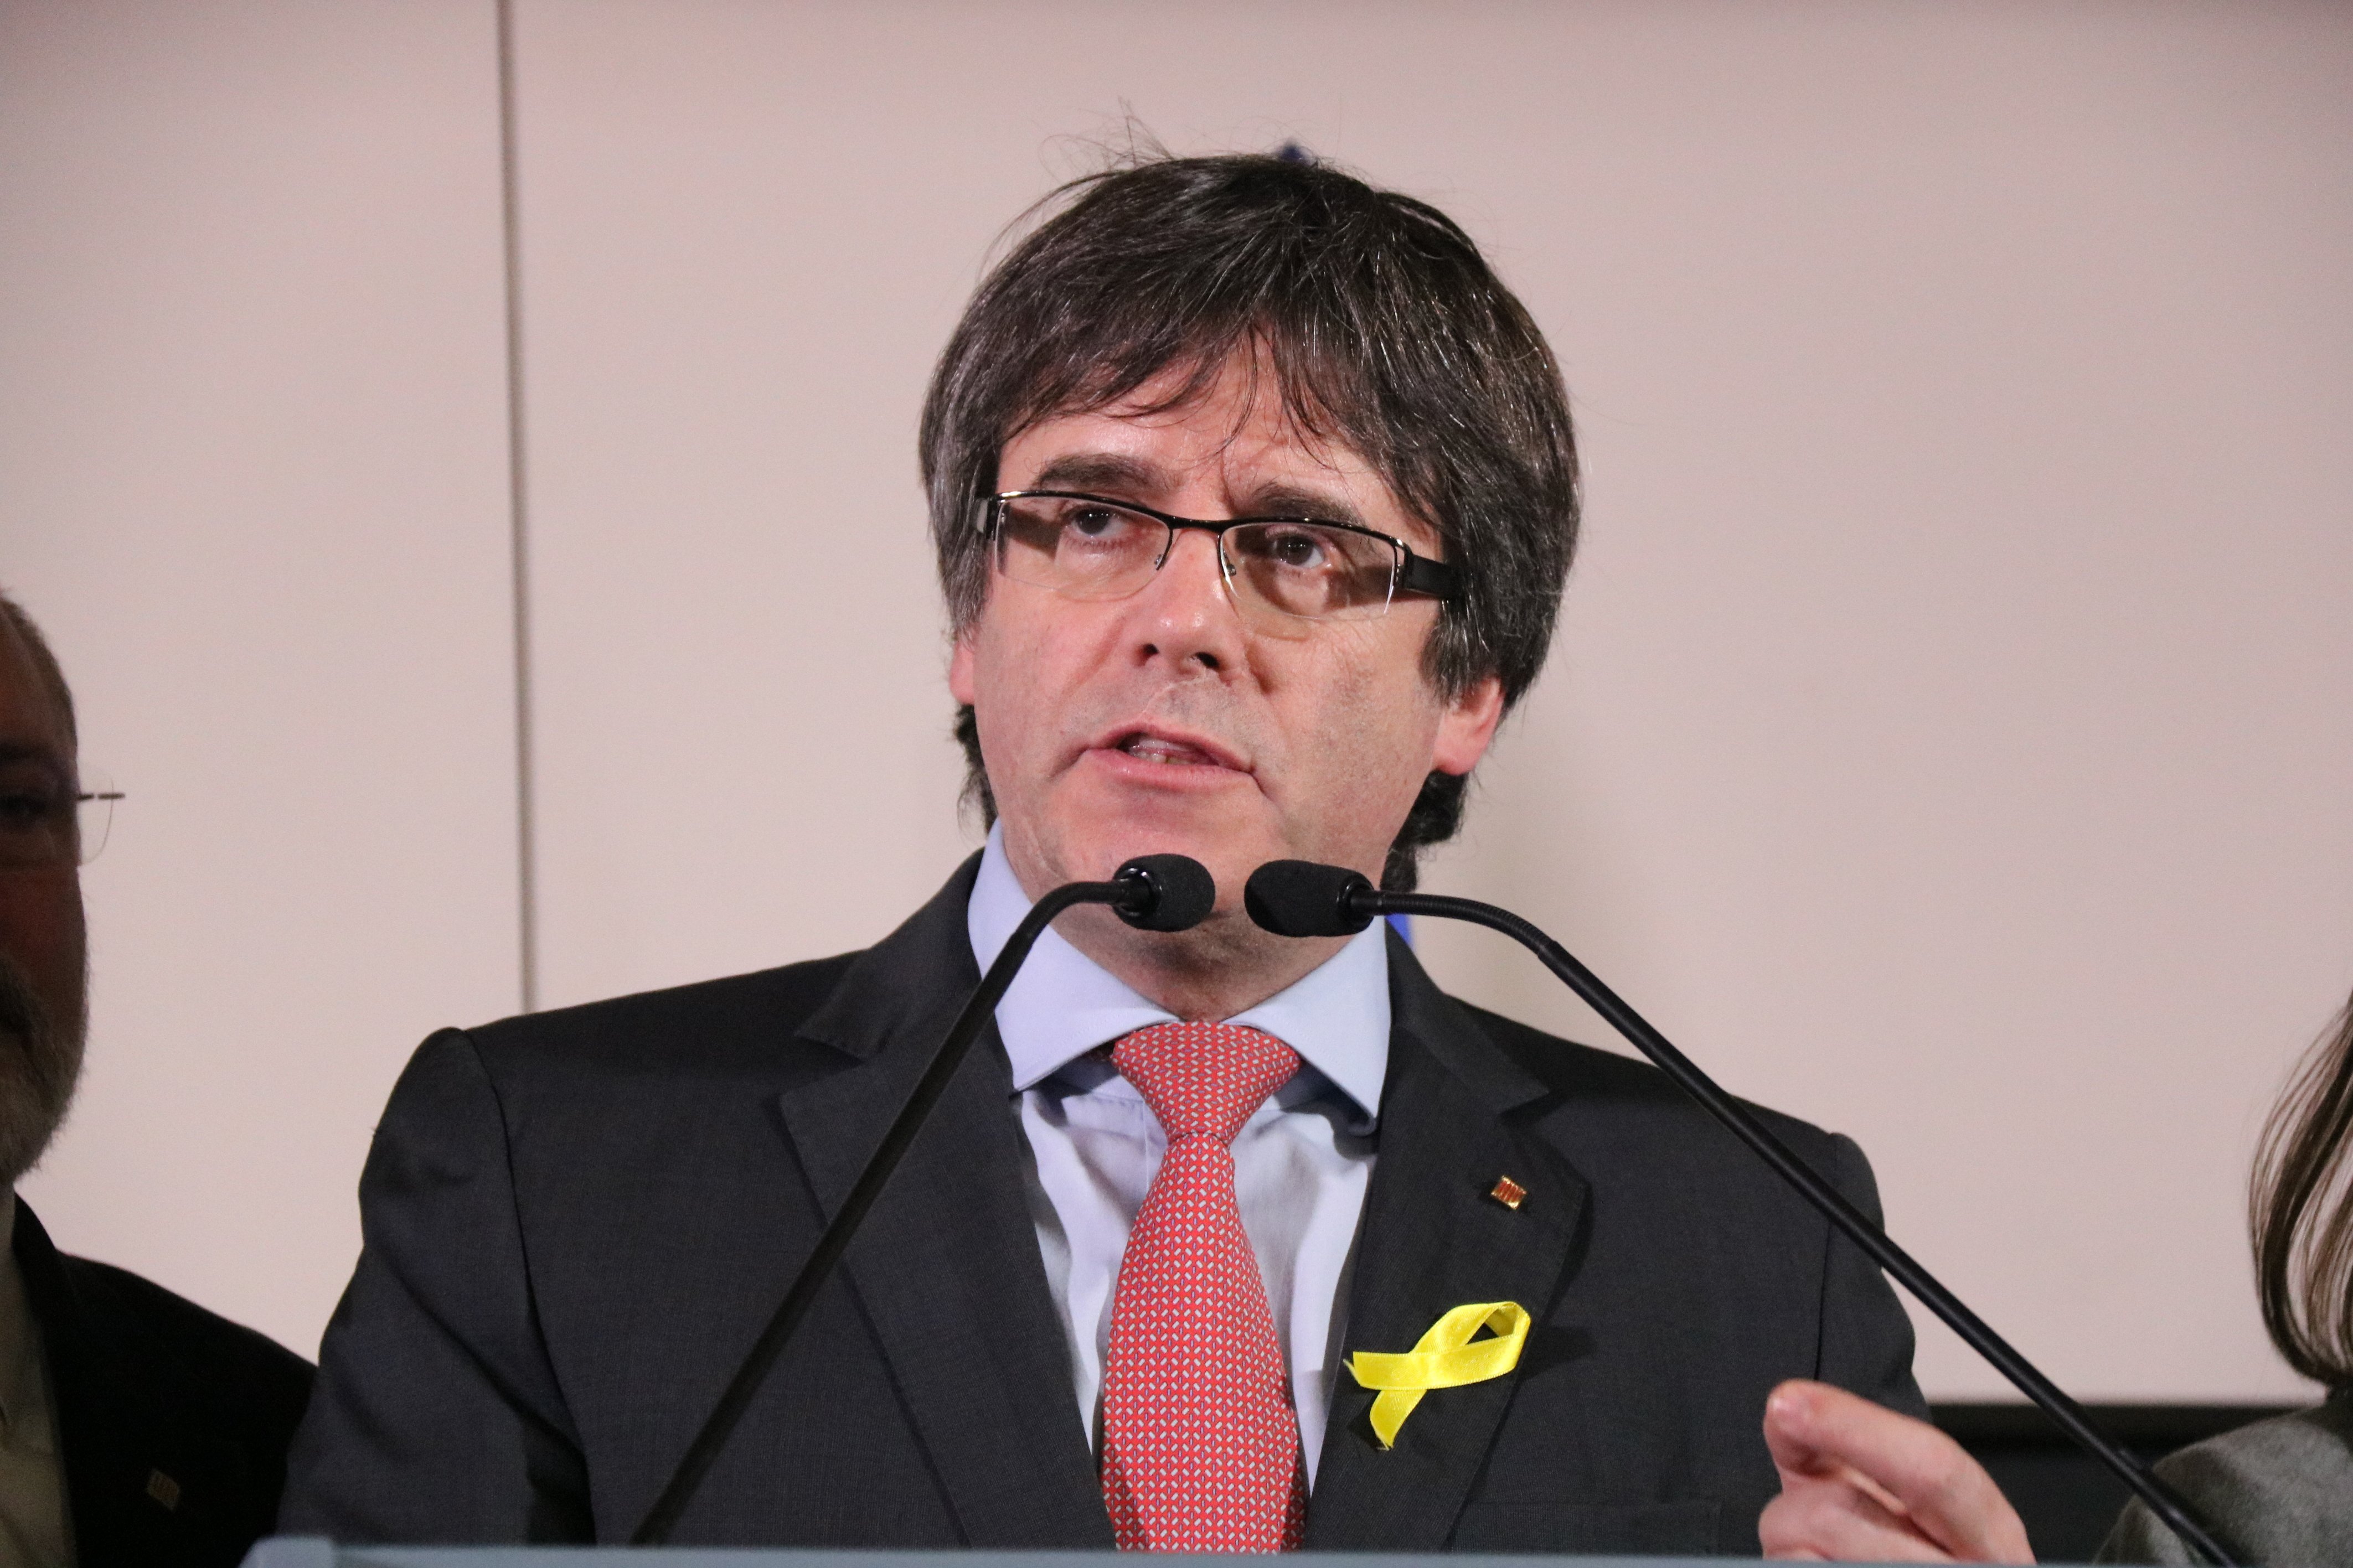 Los políticos felicitan a Puigdemont por su cumpleaños "a pesar de los del 155"